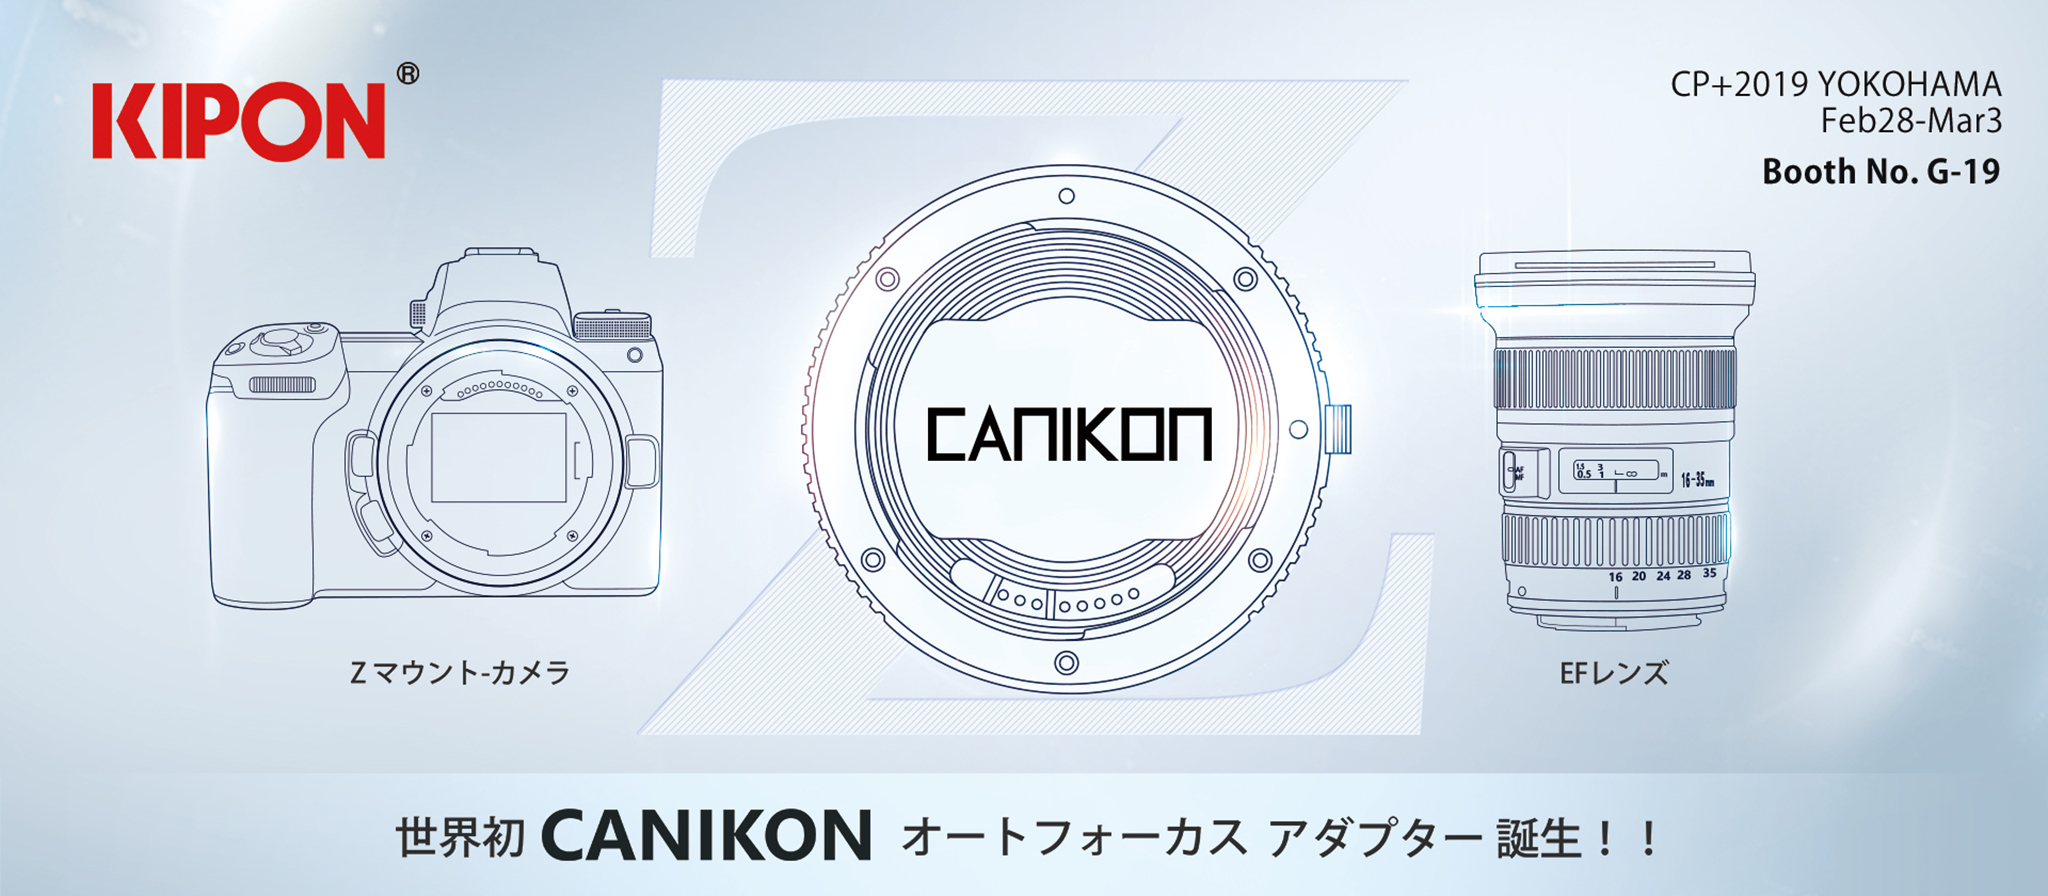 Kipon ra mắt ngàm chuyển CANIKON cho Nikon Z sử dụng ống kính EF